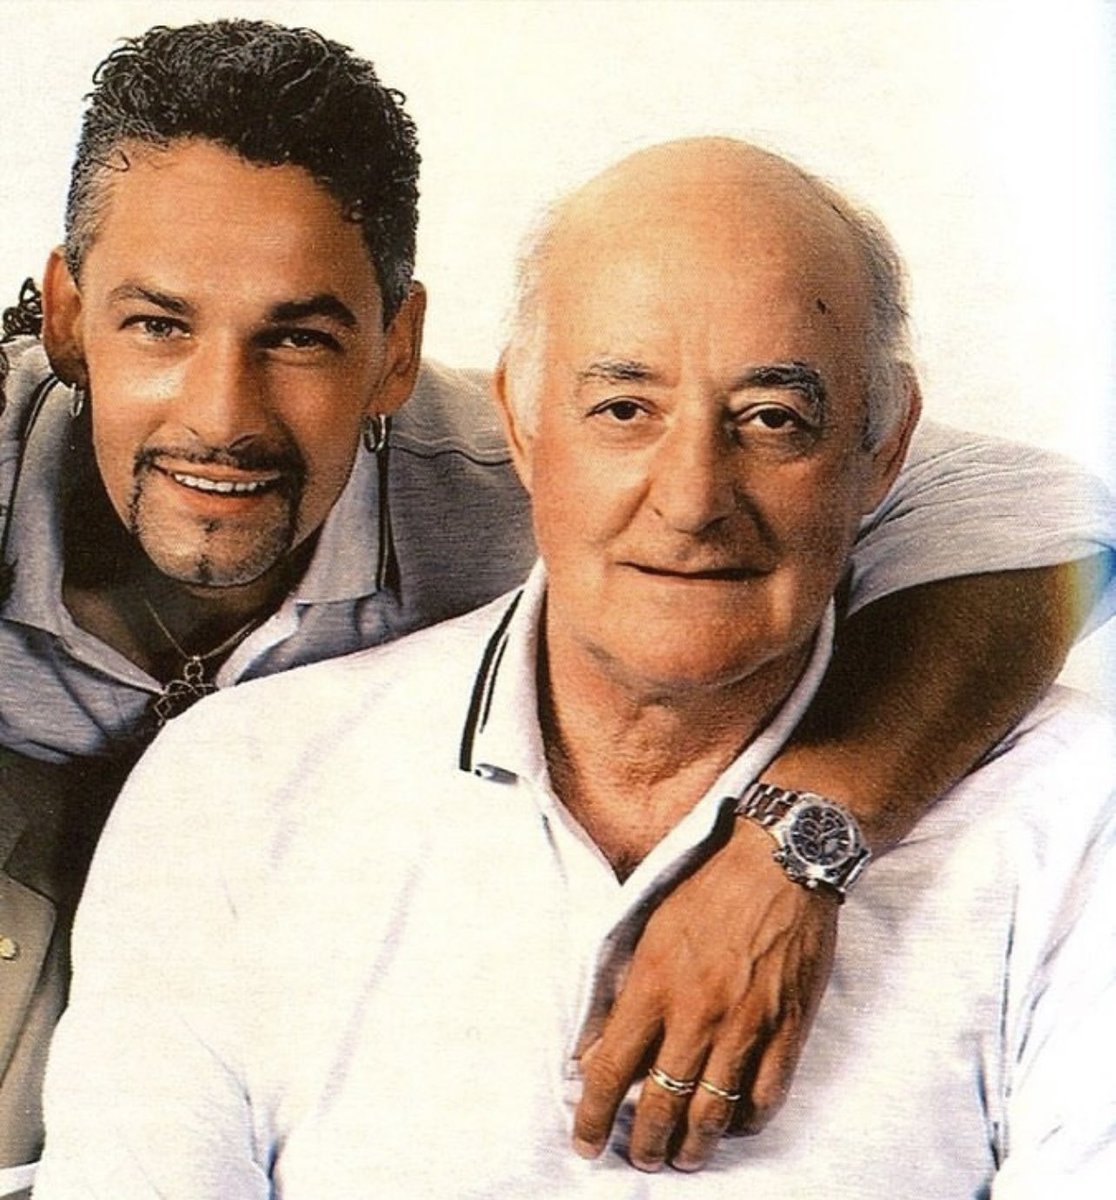 Tanti auguri a una persona per me molto importante! Tanti auguri Roberto Baggio, persona fantastica, uomo per bene, professionista esemplare! Come un figlio.